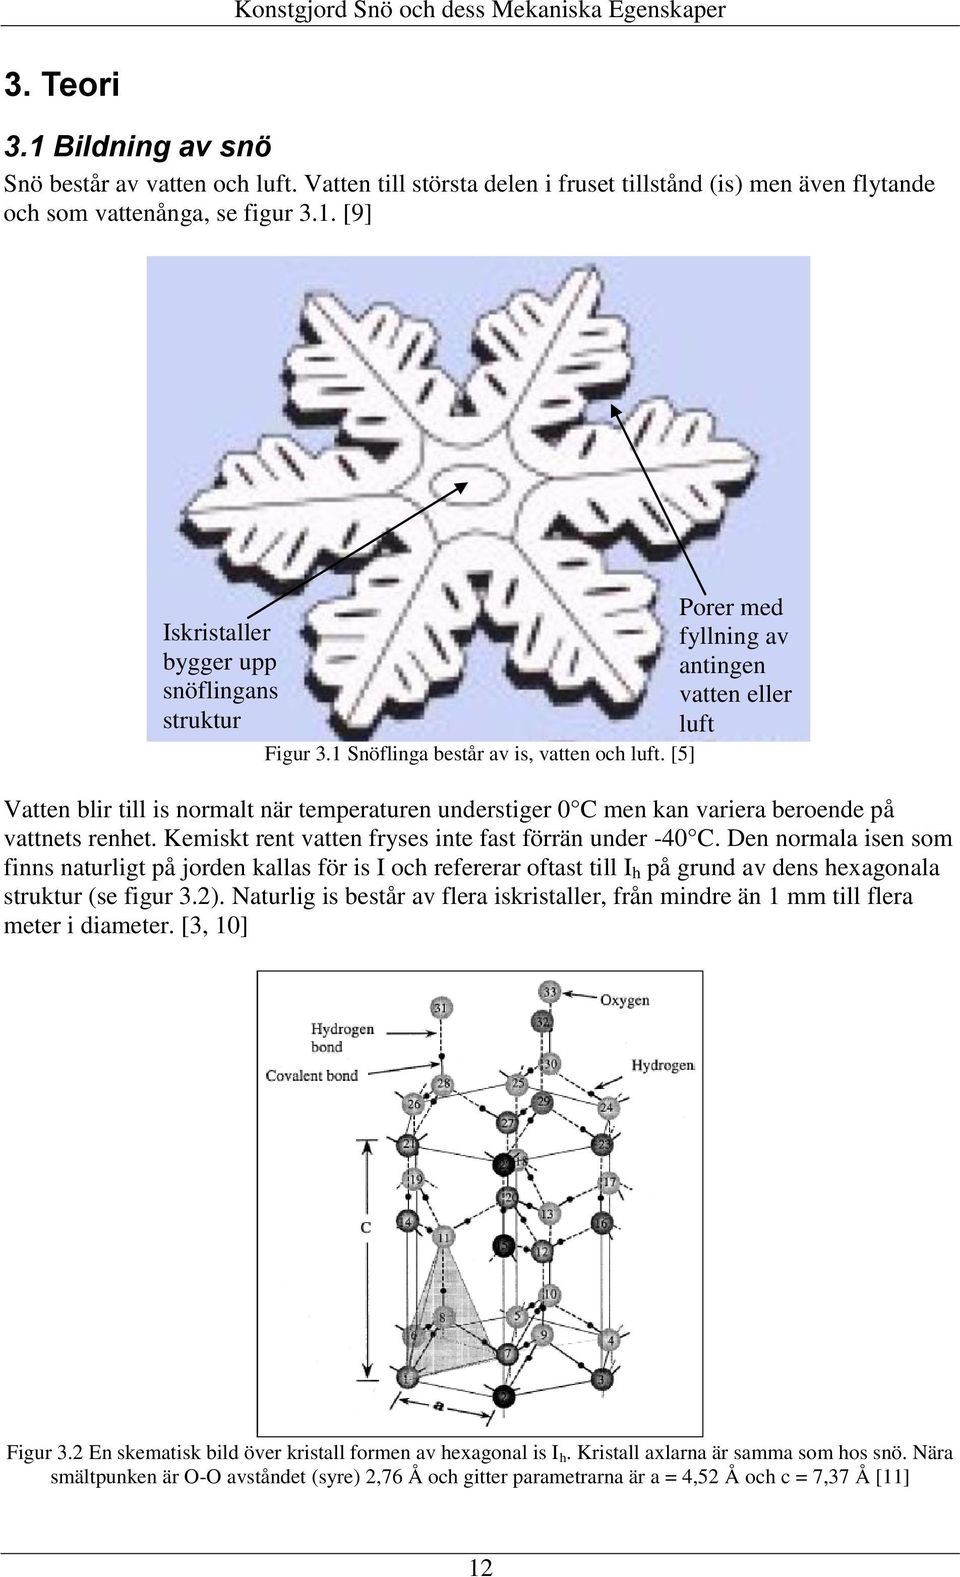 Kemiskt rent vatten fryses inte fast förrän under -4 C. Den normala isen som finns naturligt på jorden kallas för is I och refererar oftast till I h på grund av dens hexagonala struktur (se figur 3.